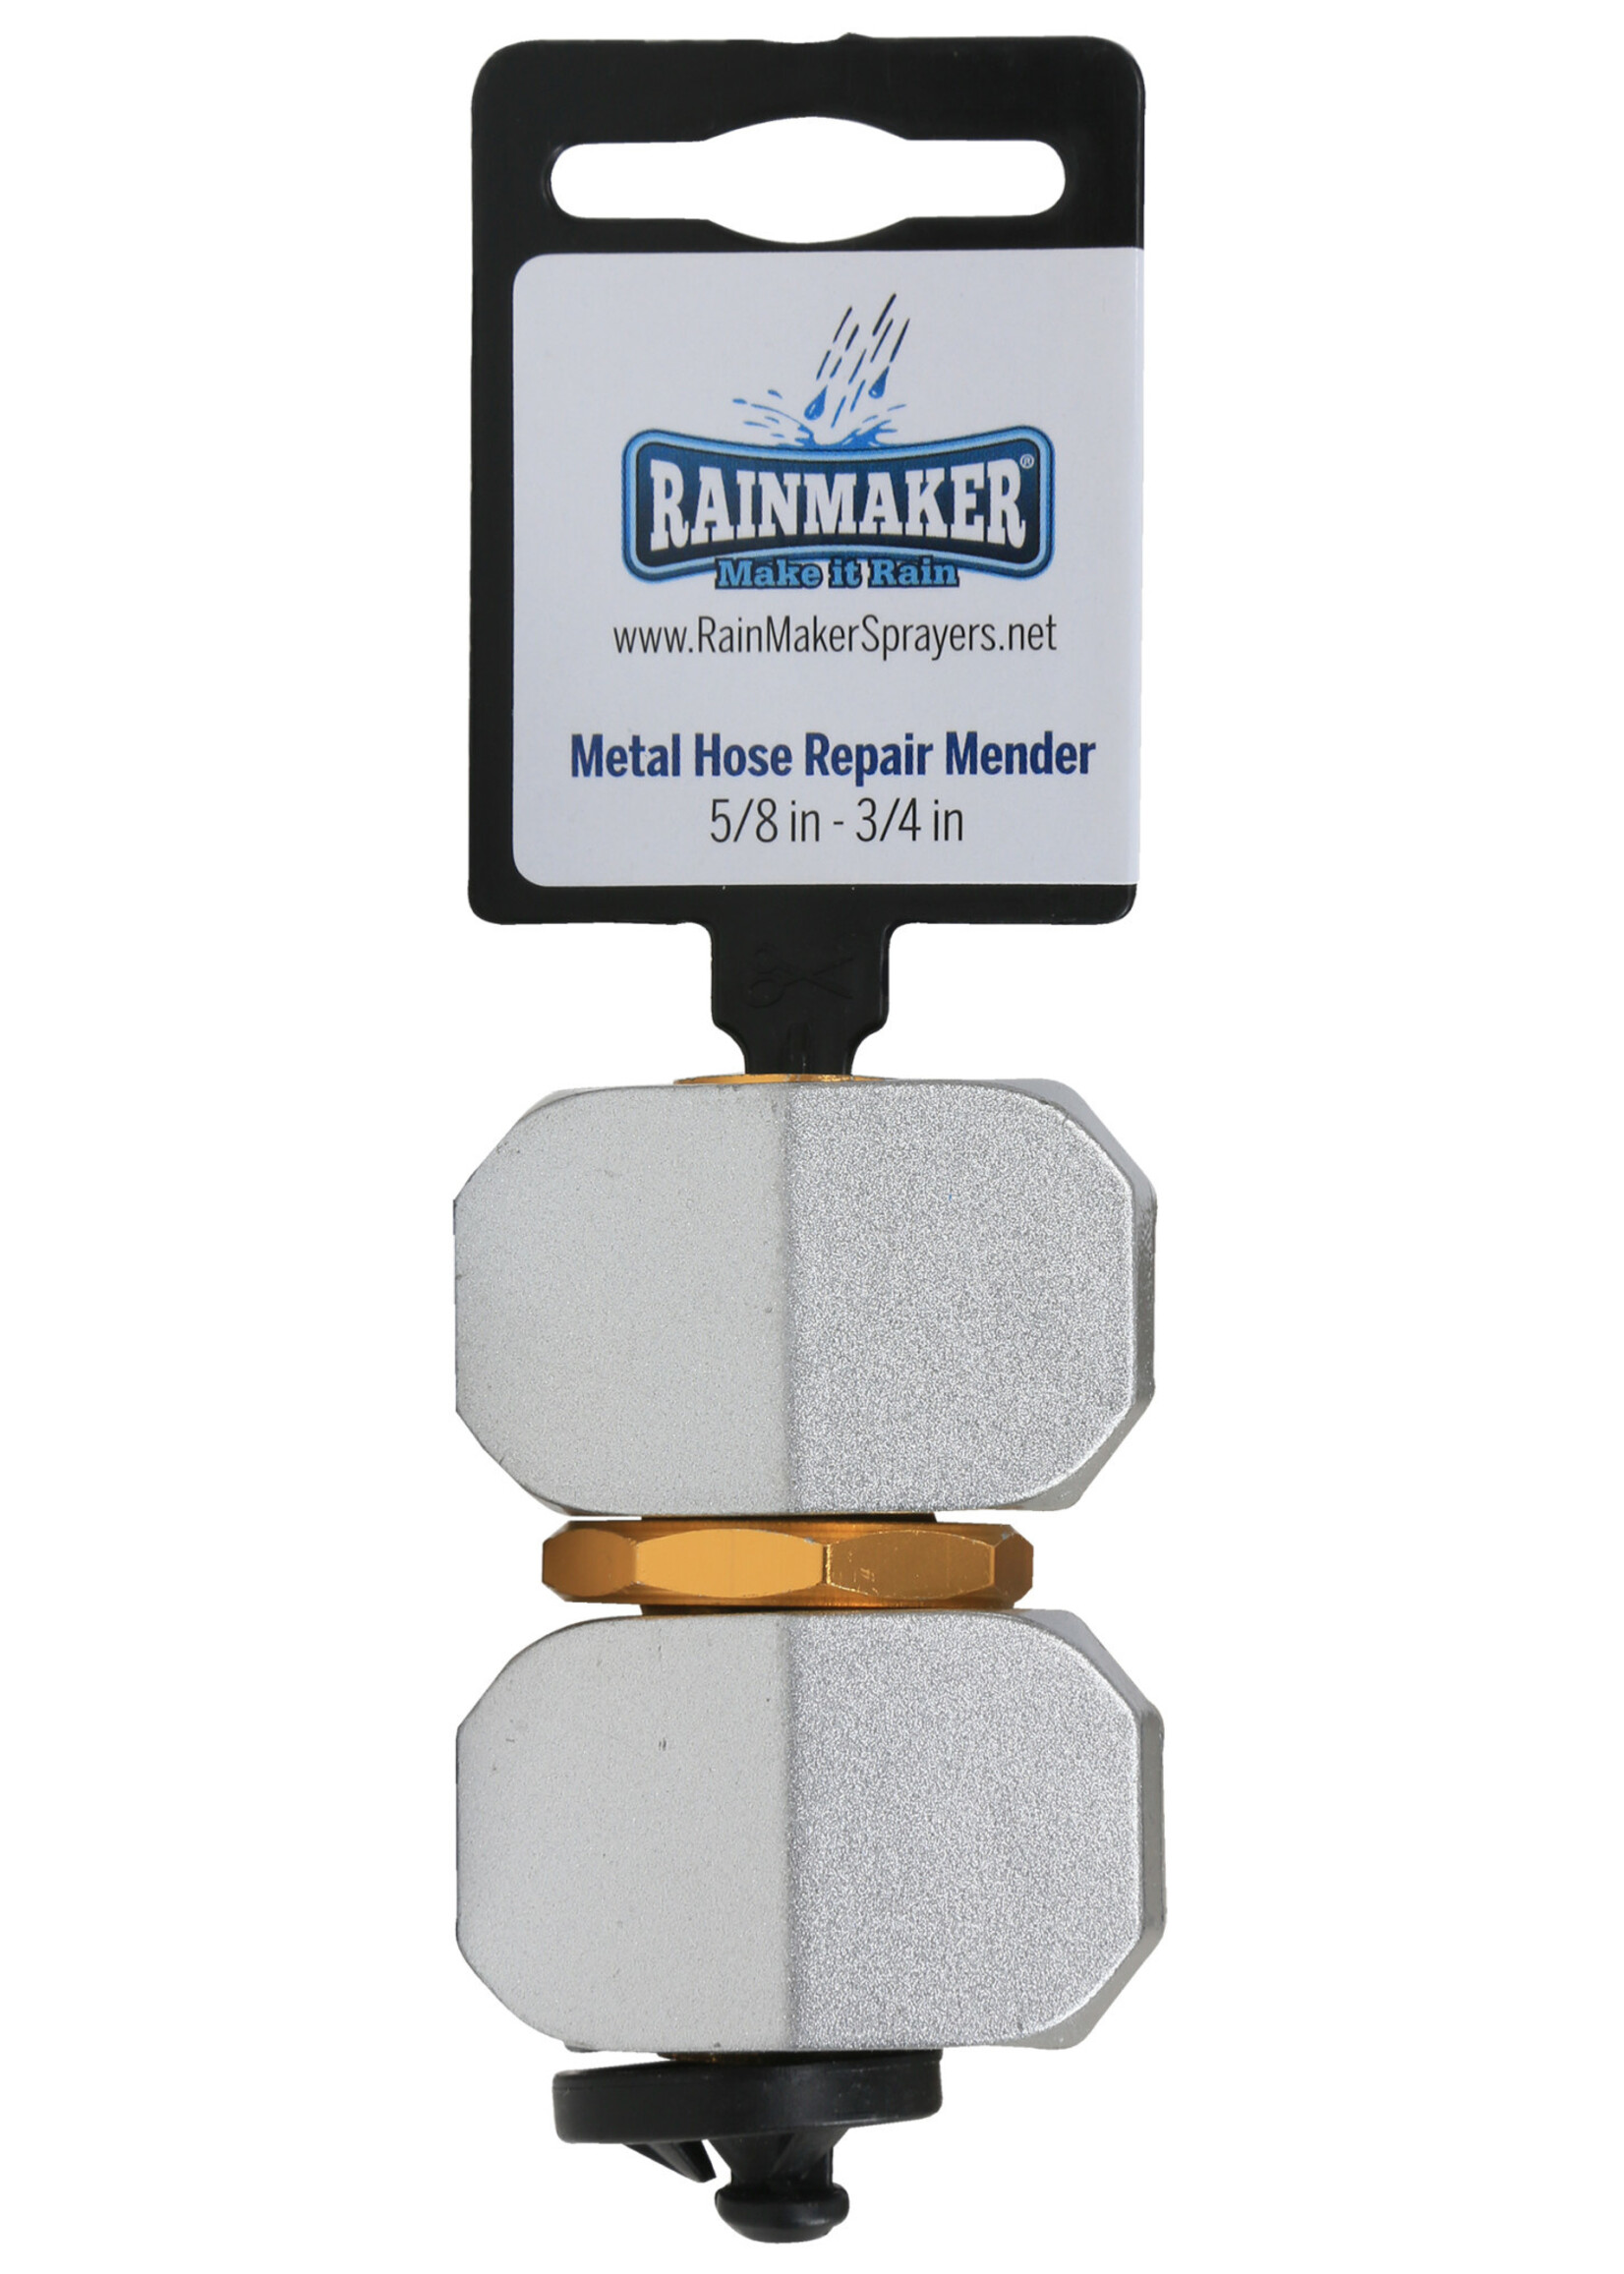 Rainmaker Rainmaker Metal Hose Repair Mender 5/8 in - 3/4 in